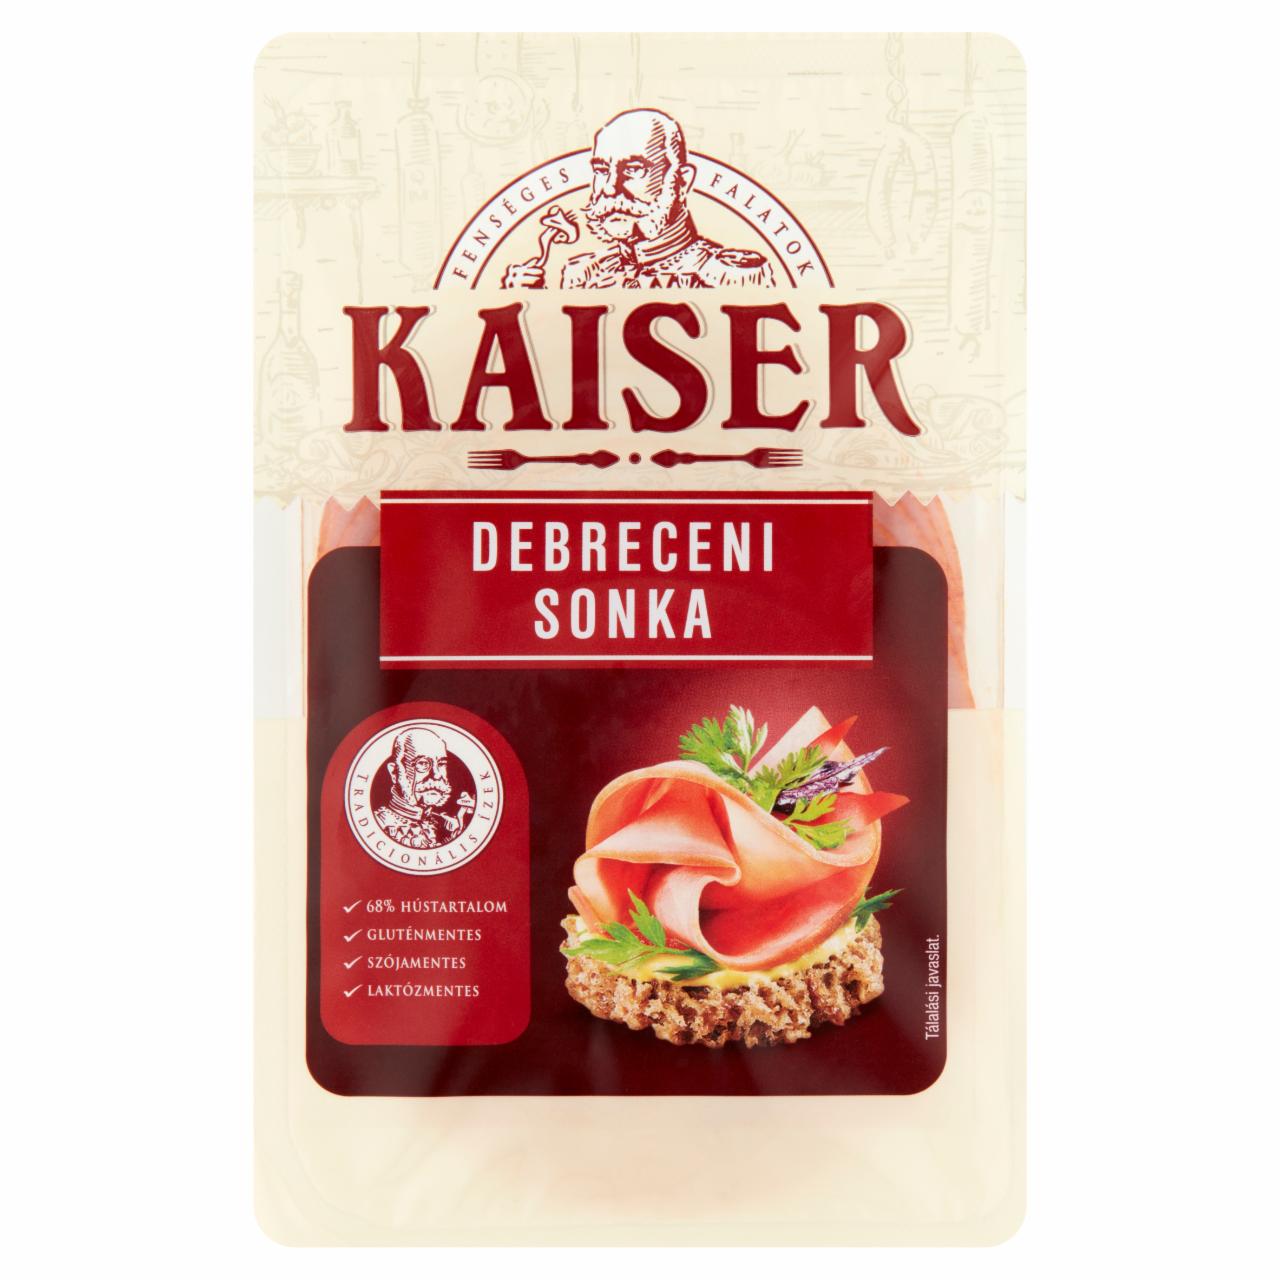 Képek - Kaiser szeletelt debreceni sonka 100 g